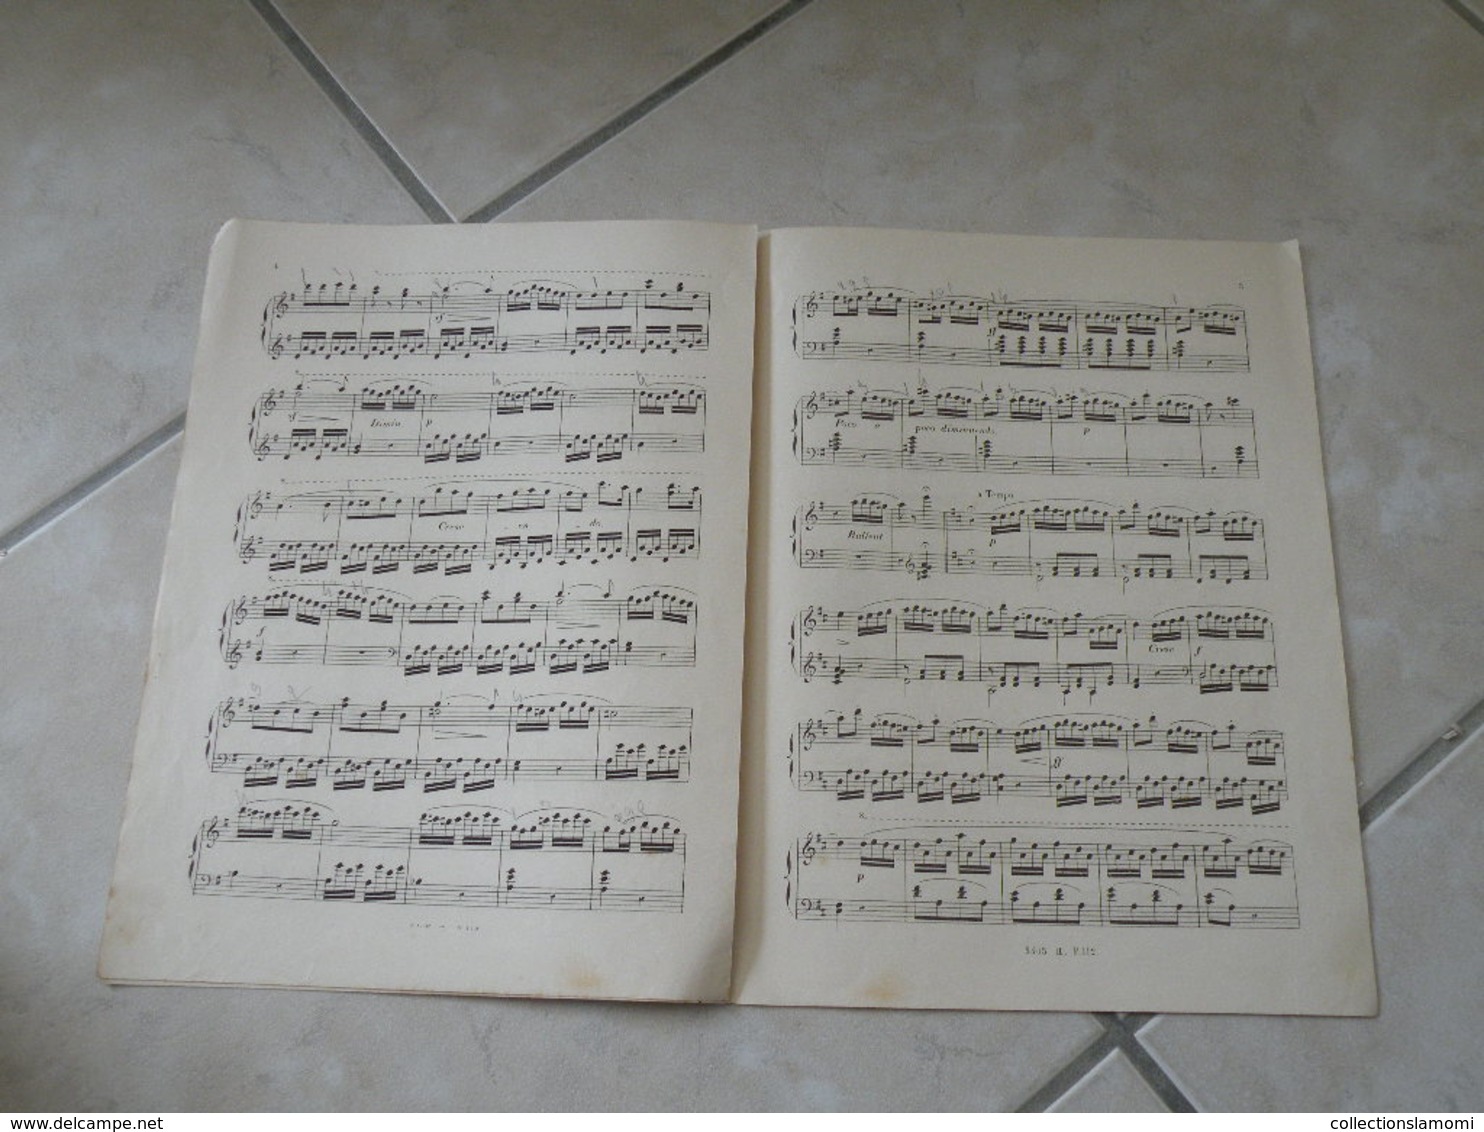 La Matinée - Rondo Favori - Musique Classique Piano (J.L. Dussek) - Instruments à Clavier